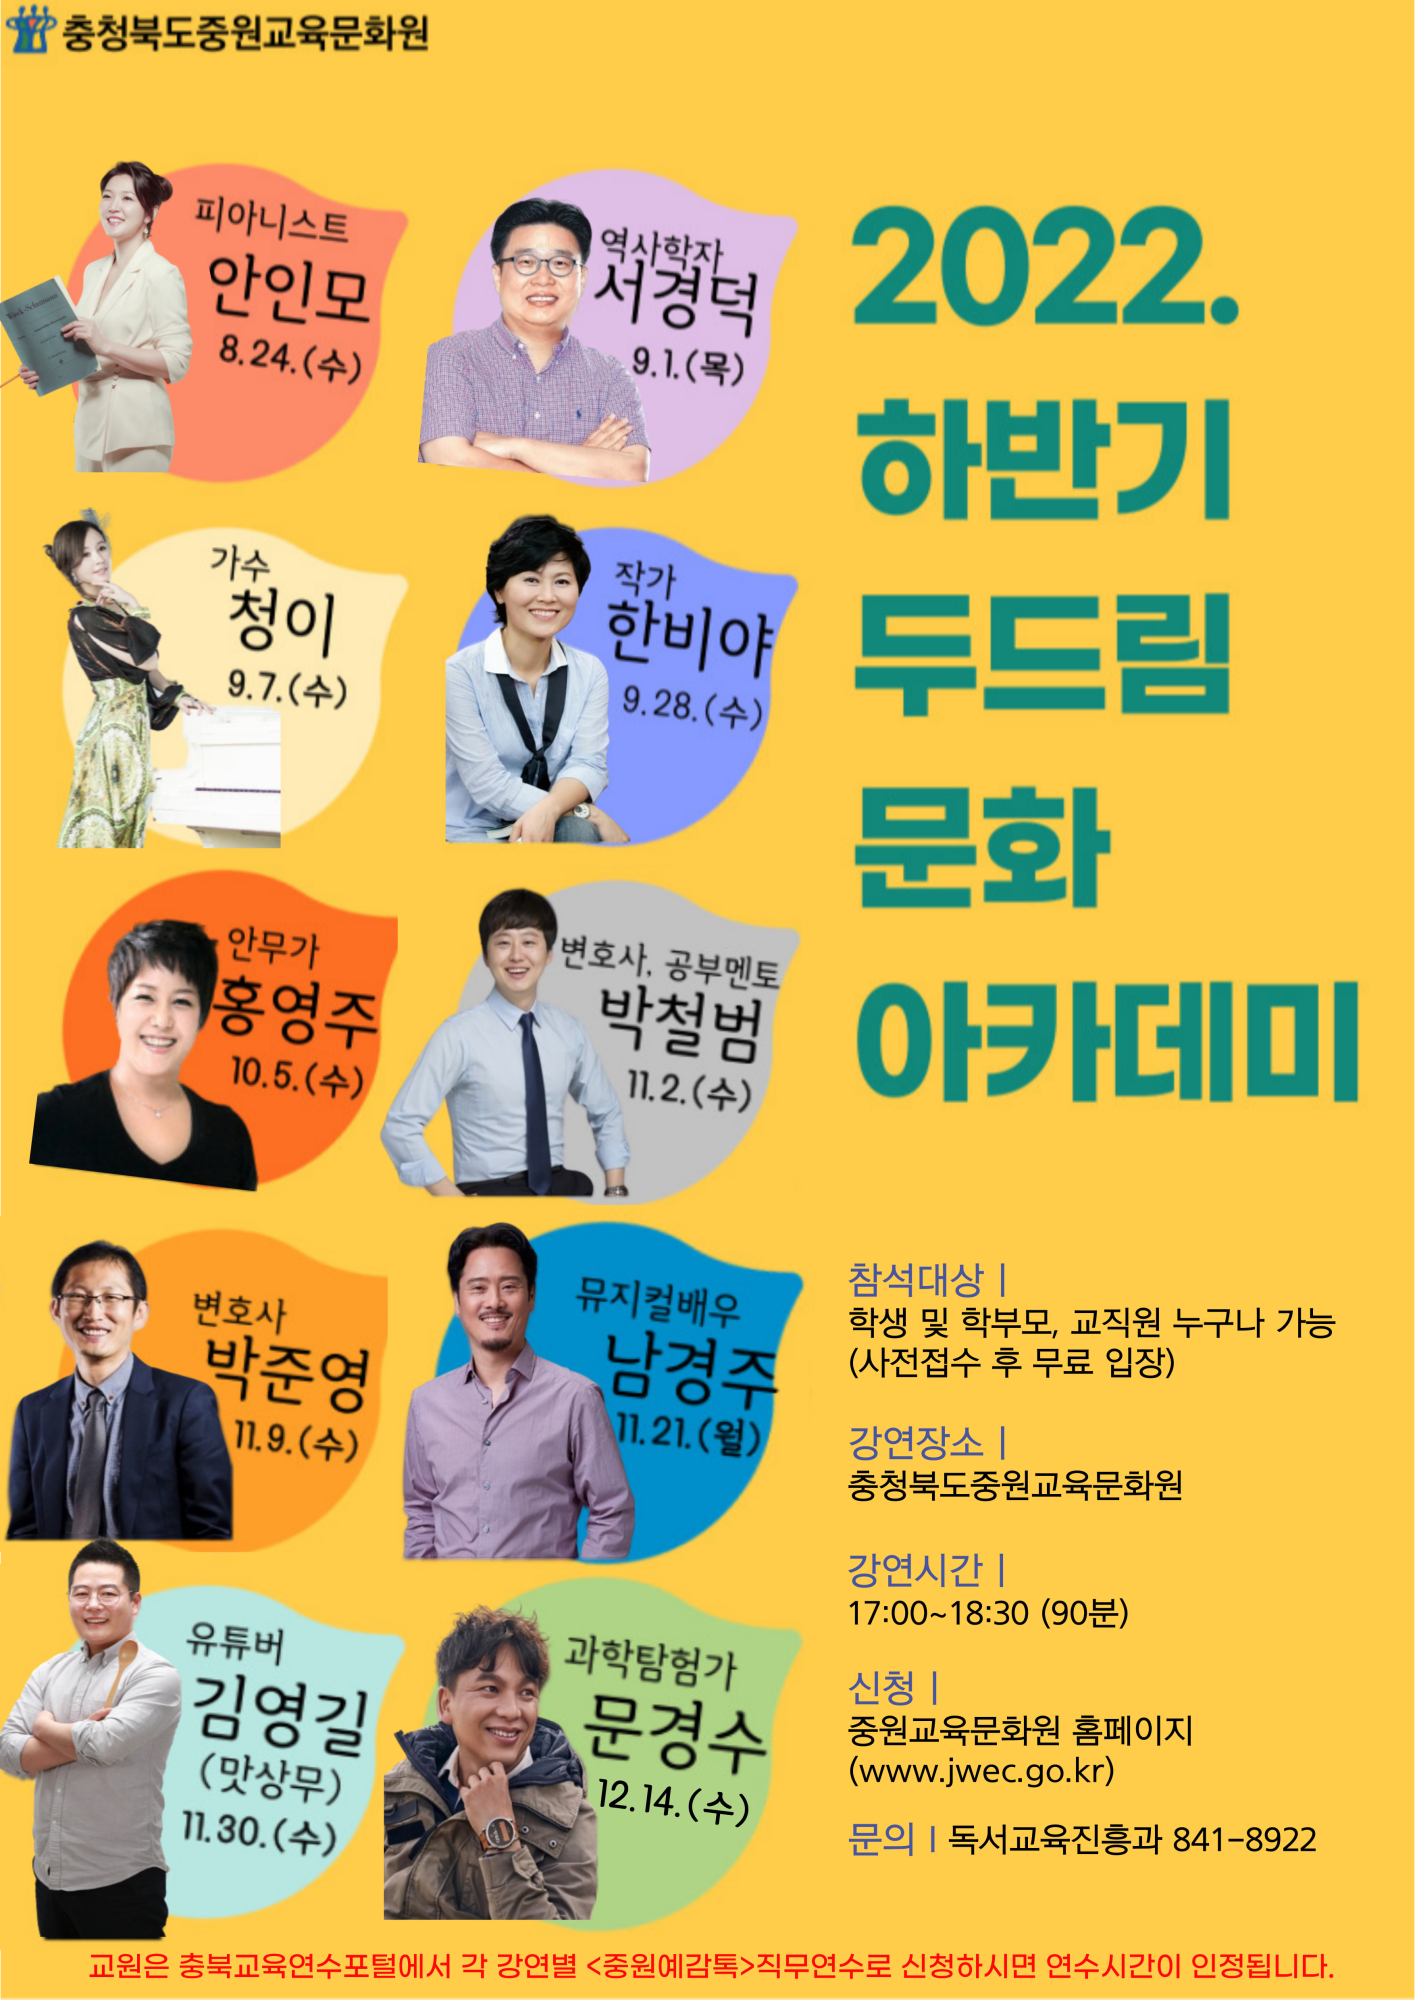 충청북도중원교육문화원 독서교육진흥과_2022. 하반기 두드림 문화아카데미 홍보문